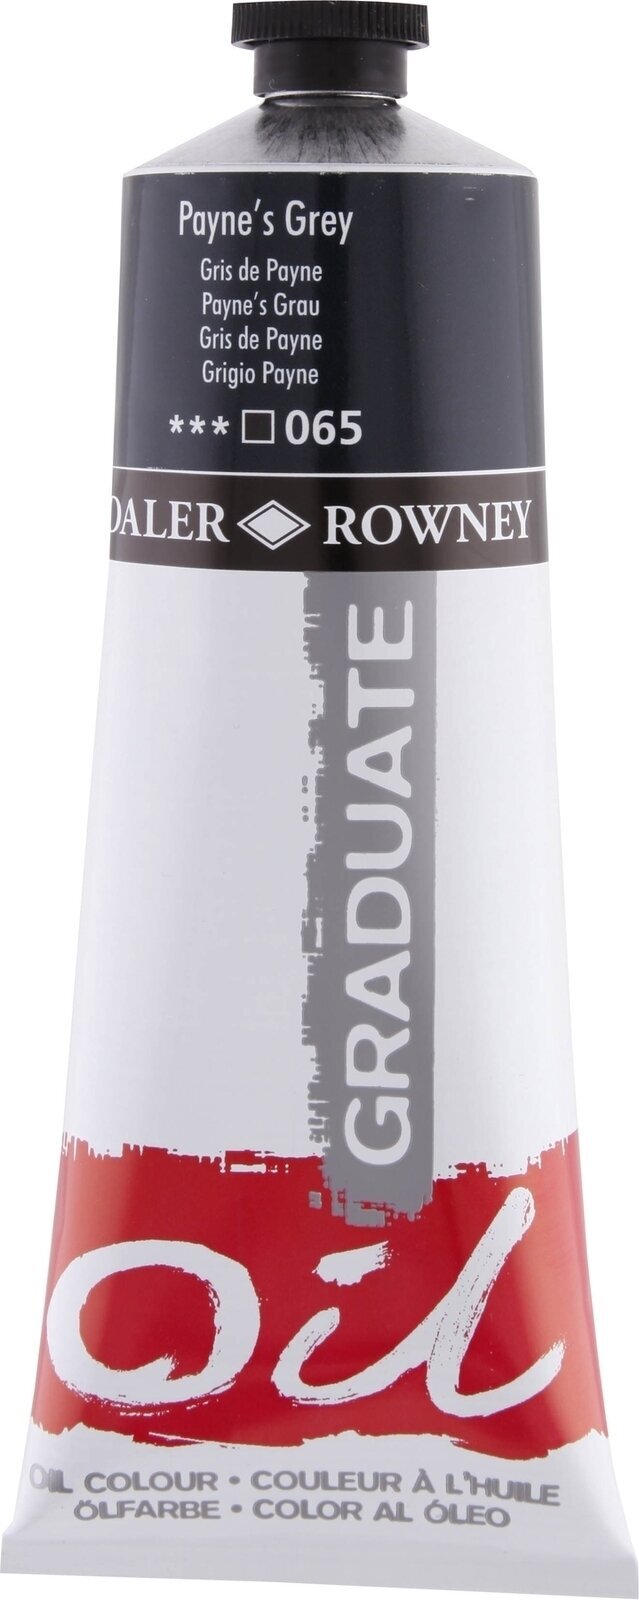 Oil colour Daler Rowney Graduate Oil Paint Payne's Grey 200 ml 1 pc